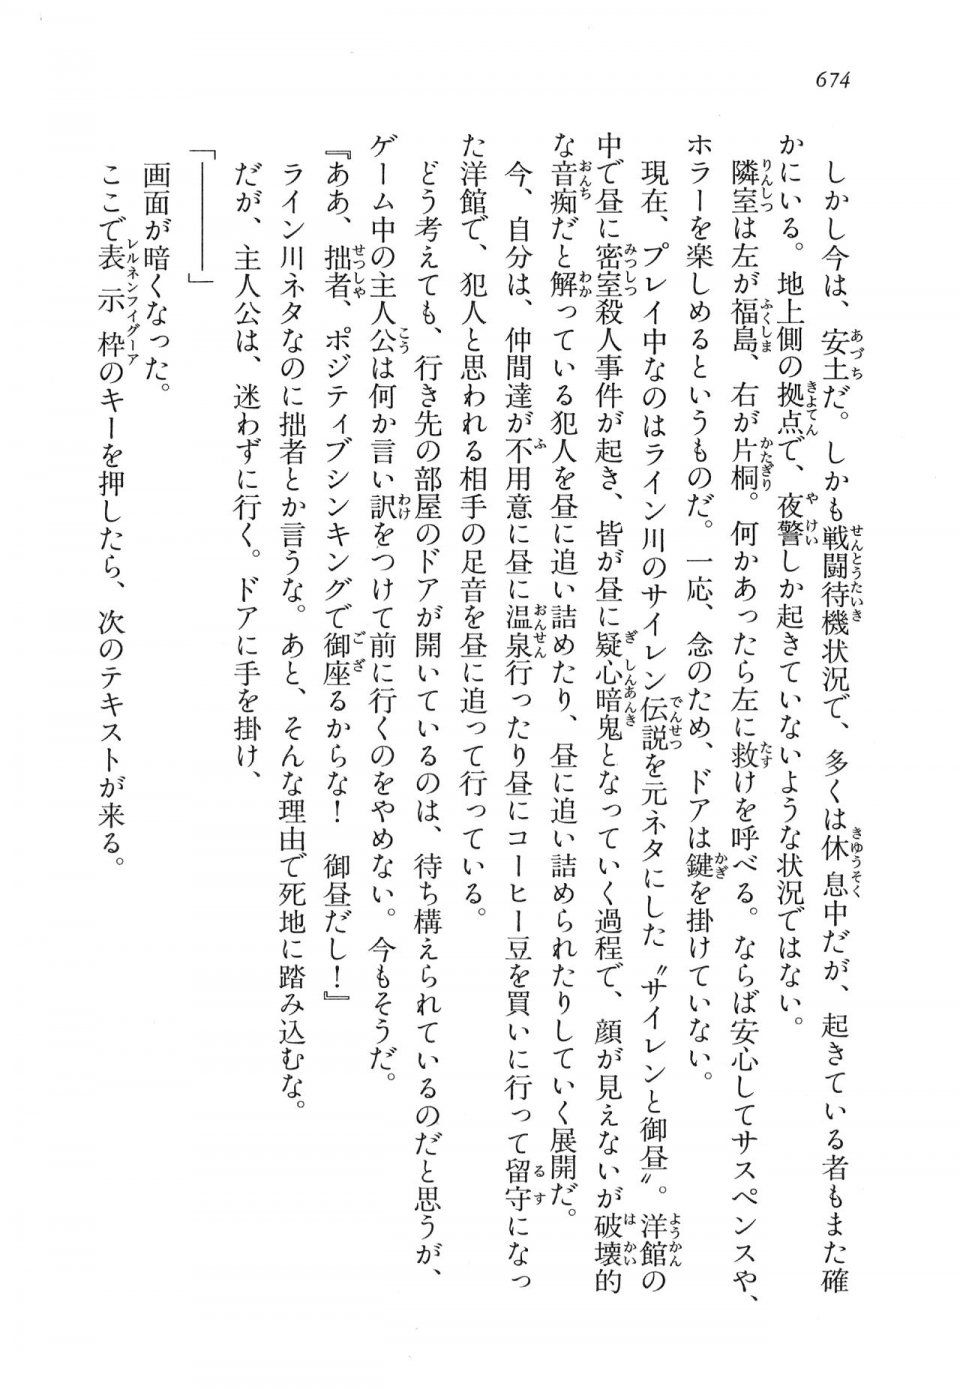 Kyoukai Senjou no Horizon LN Vol 16(7A) - Photo #674